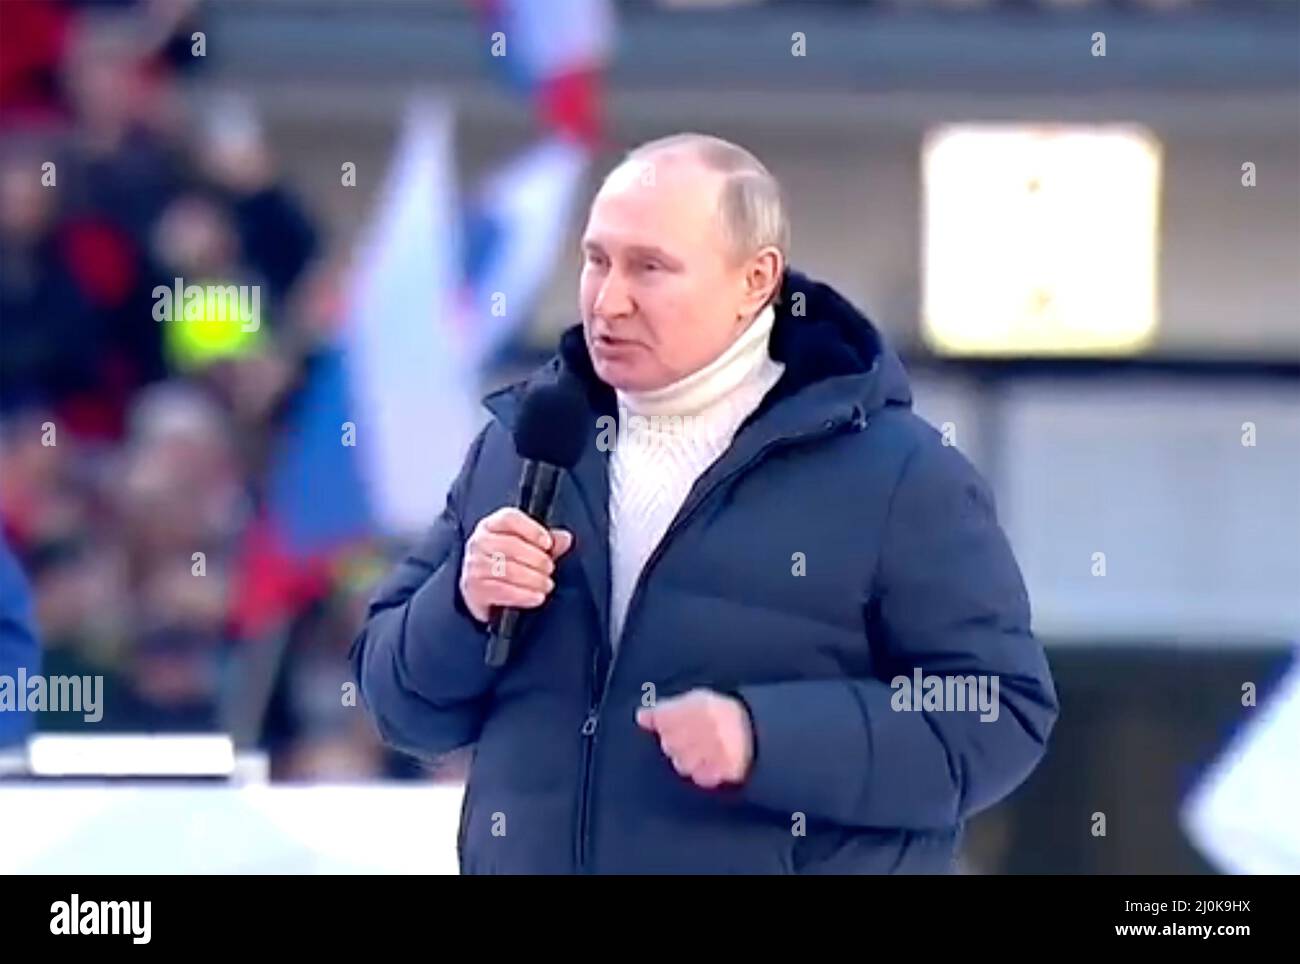 VLADIMIR POUTINE s'adresse à un rassemblement à Moscou le on18 mars 20223 pour célébrer le huitième anniversaire de l'annexion de la Crimée, vendredi 18 mars. Il porte un chandail blanc à col roulé de la société italienne Kiton et une veste de puffa de Loro Piana.photo: Kremlin.ru Banque D'Images